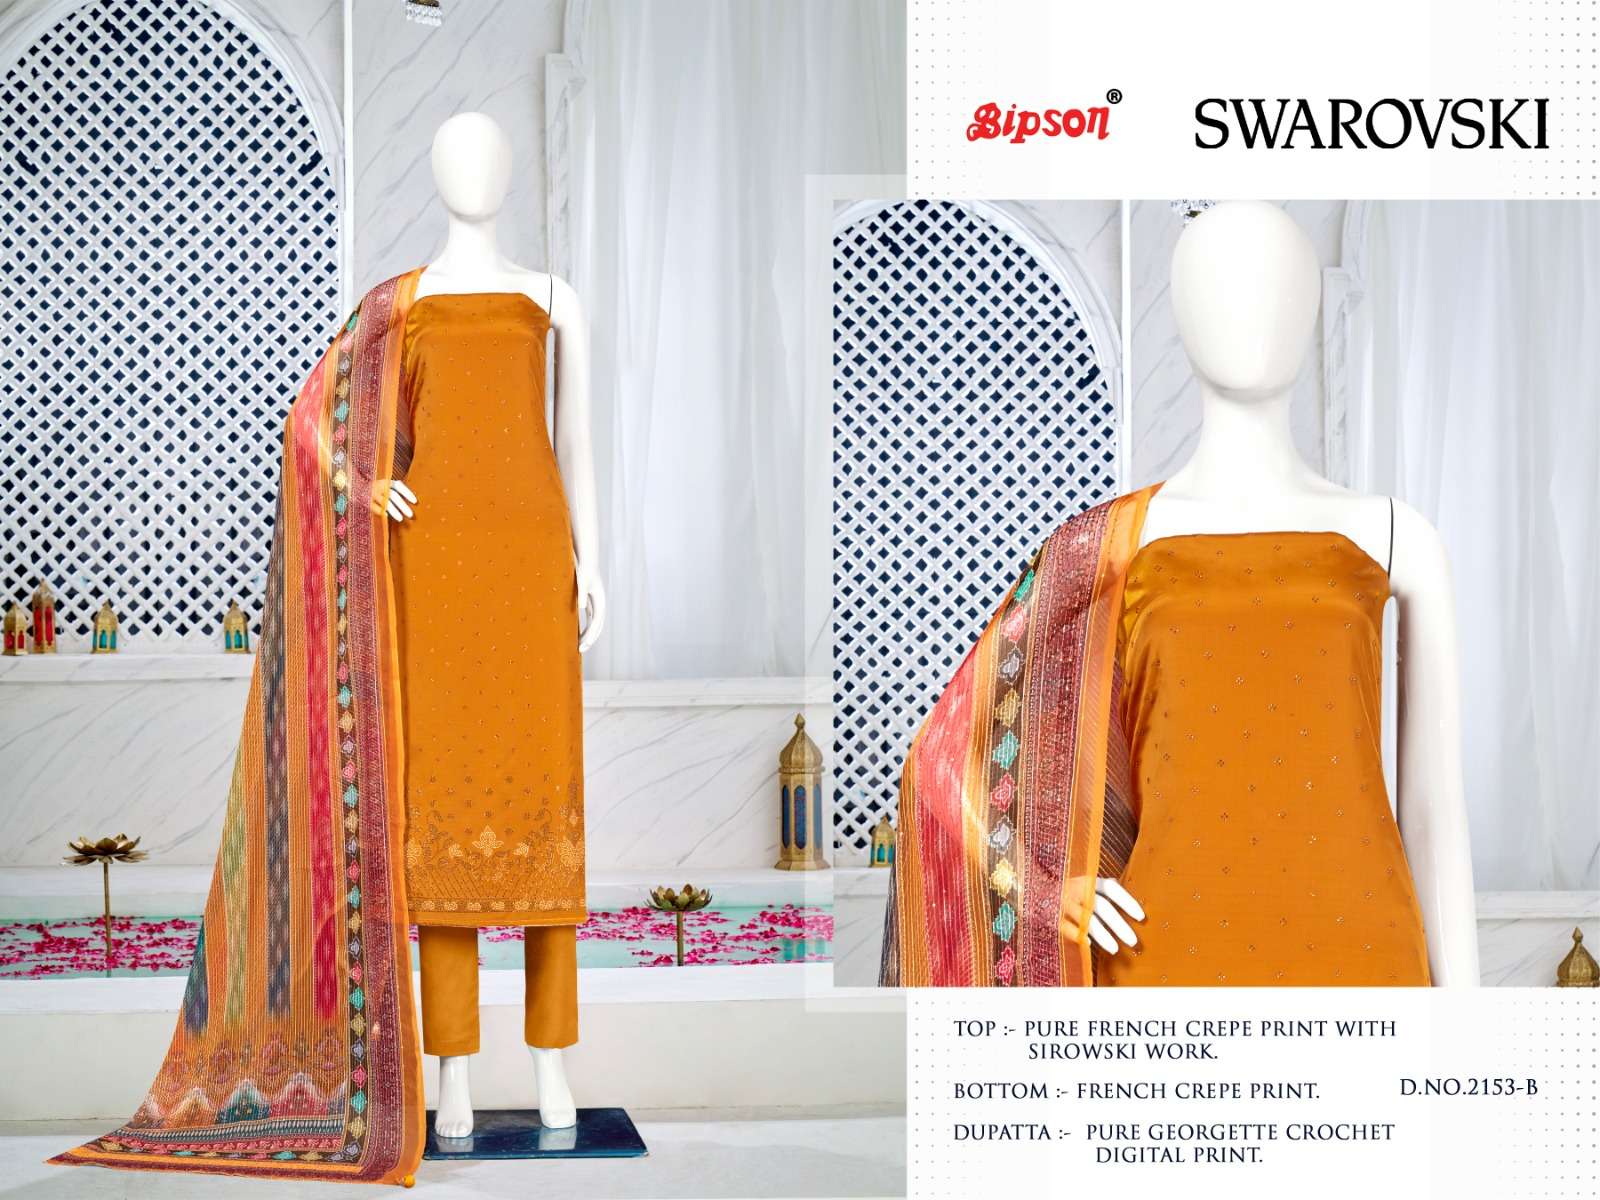 bipson prints swarovski 2153 series unstitched designer salwar kameez catalogue design 2023